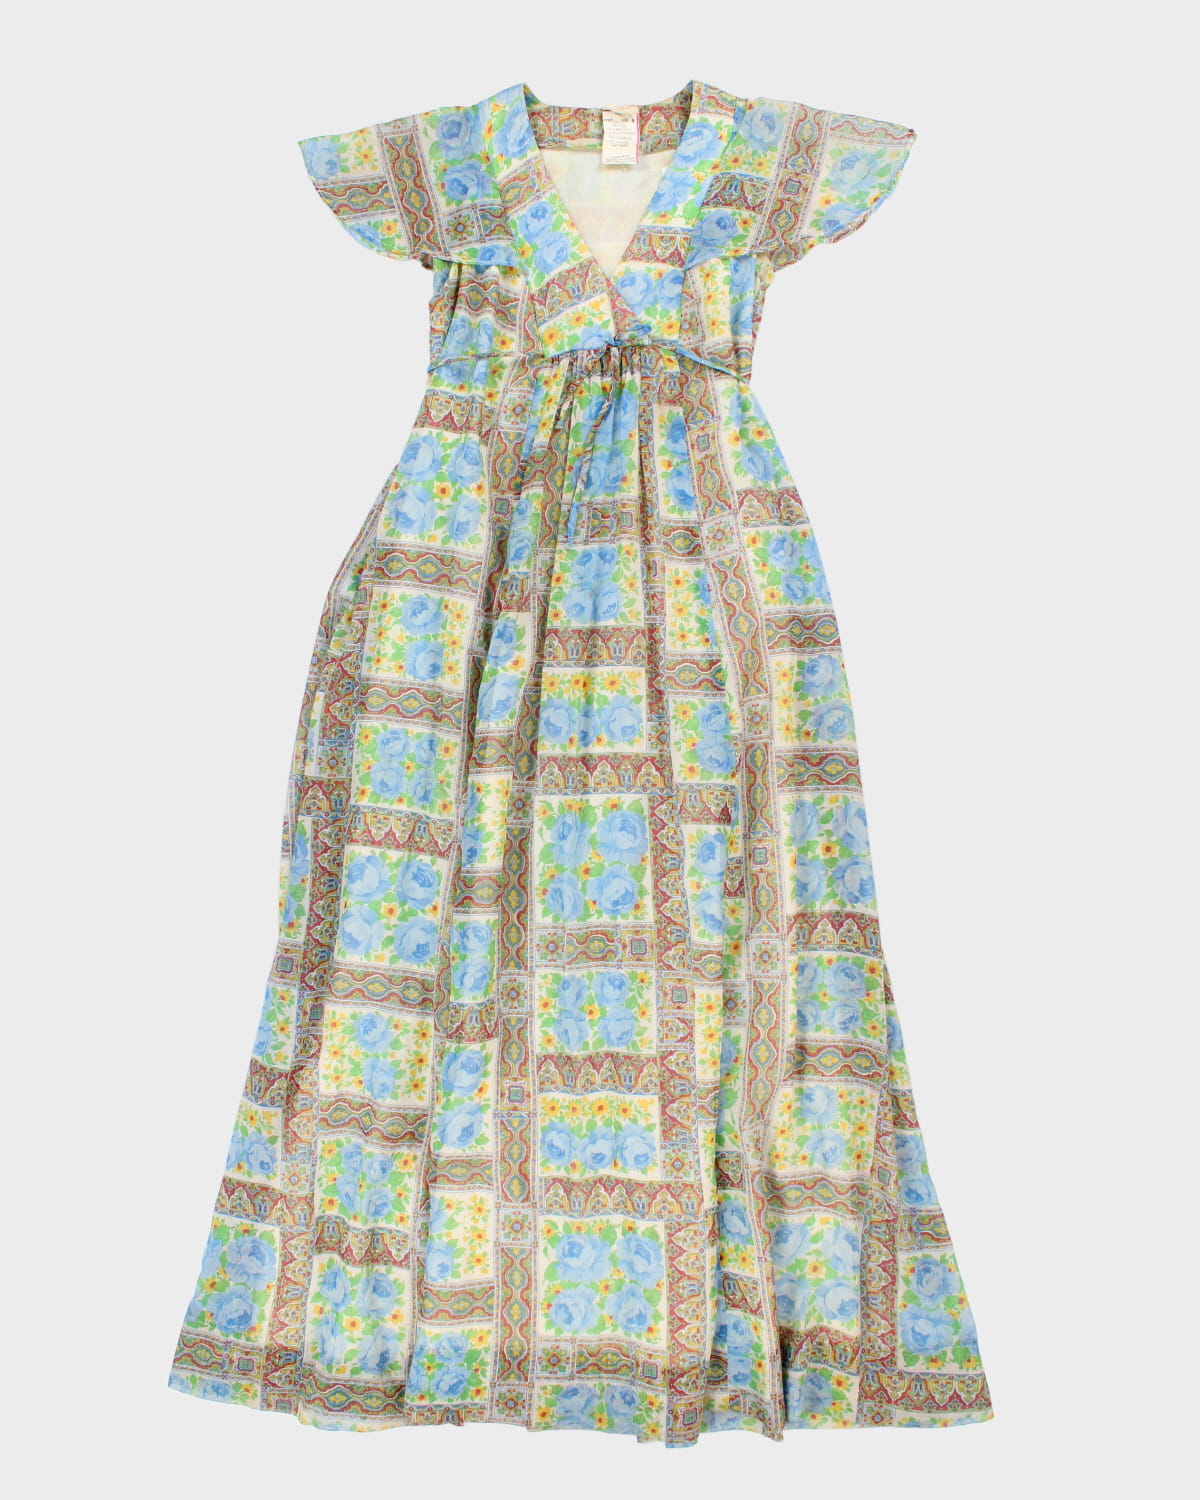 Vintage Floral Dress - M